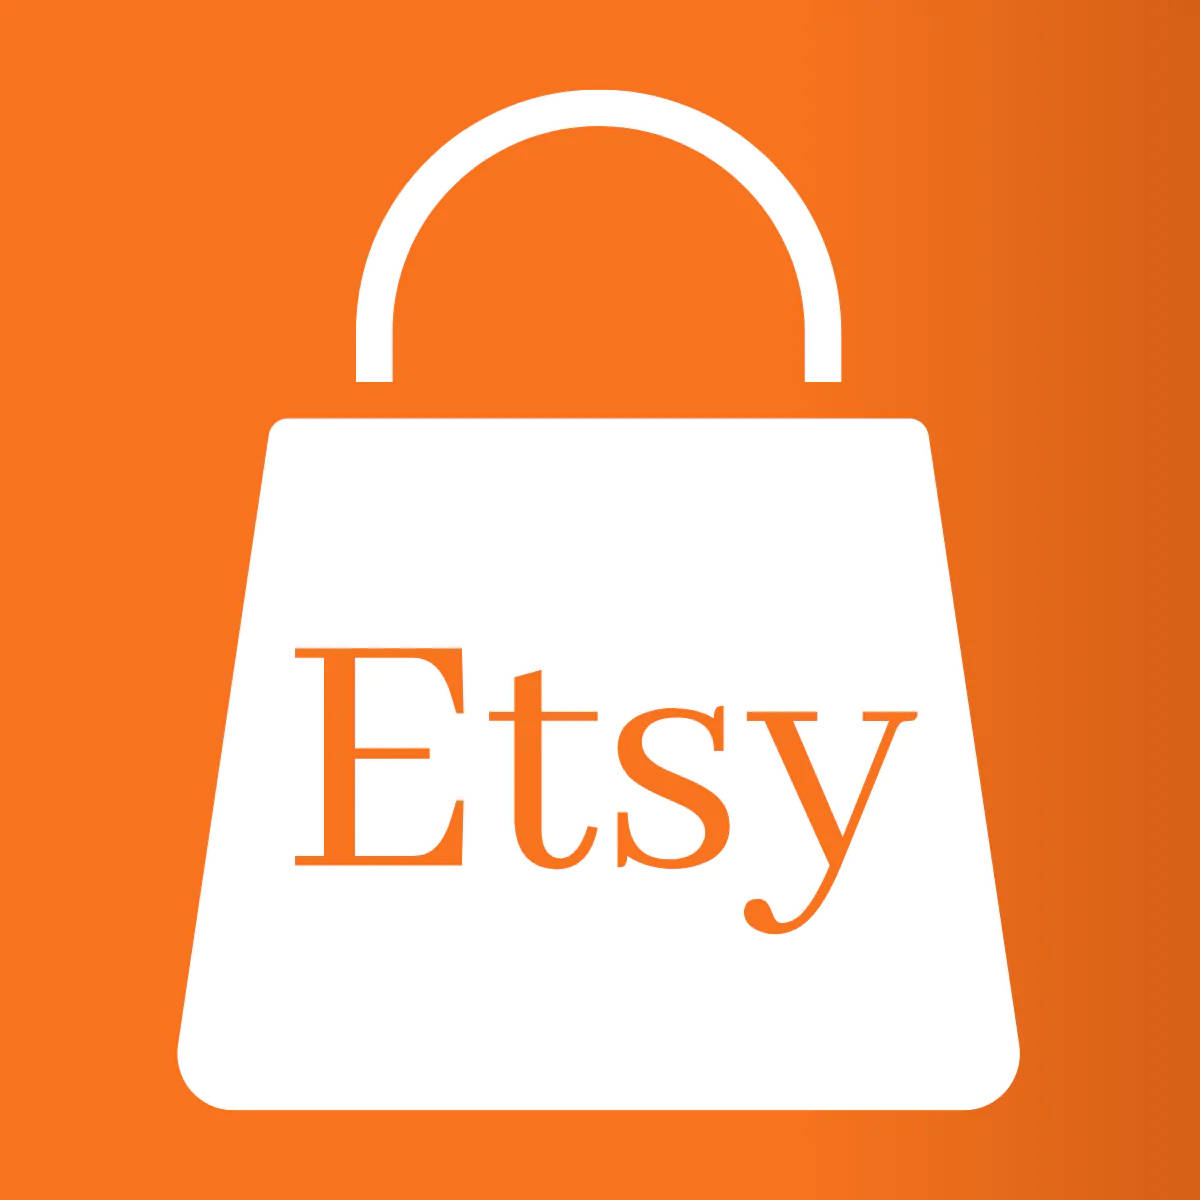 Etsy Bag Logo Wallpaper